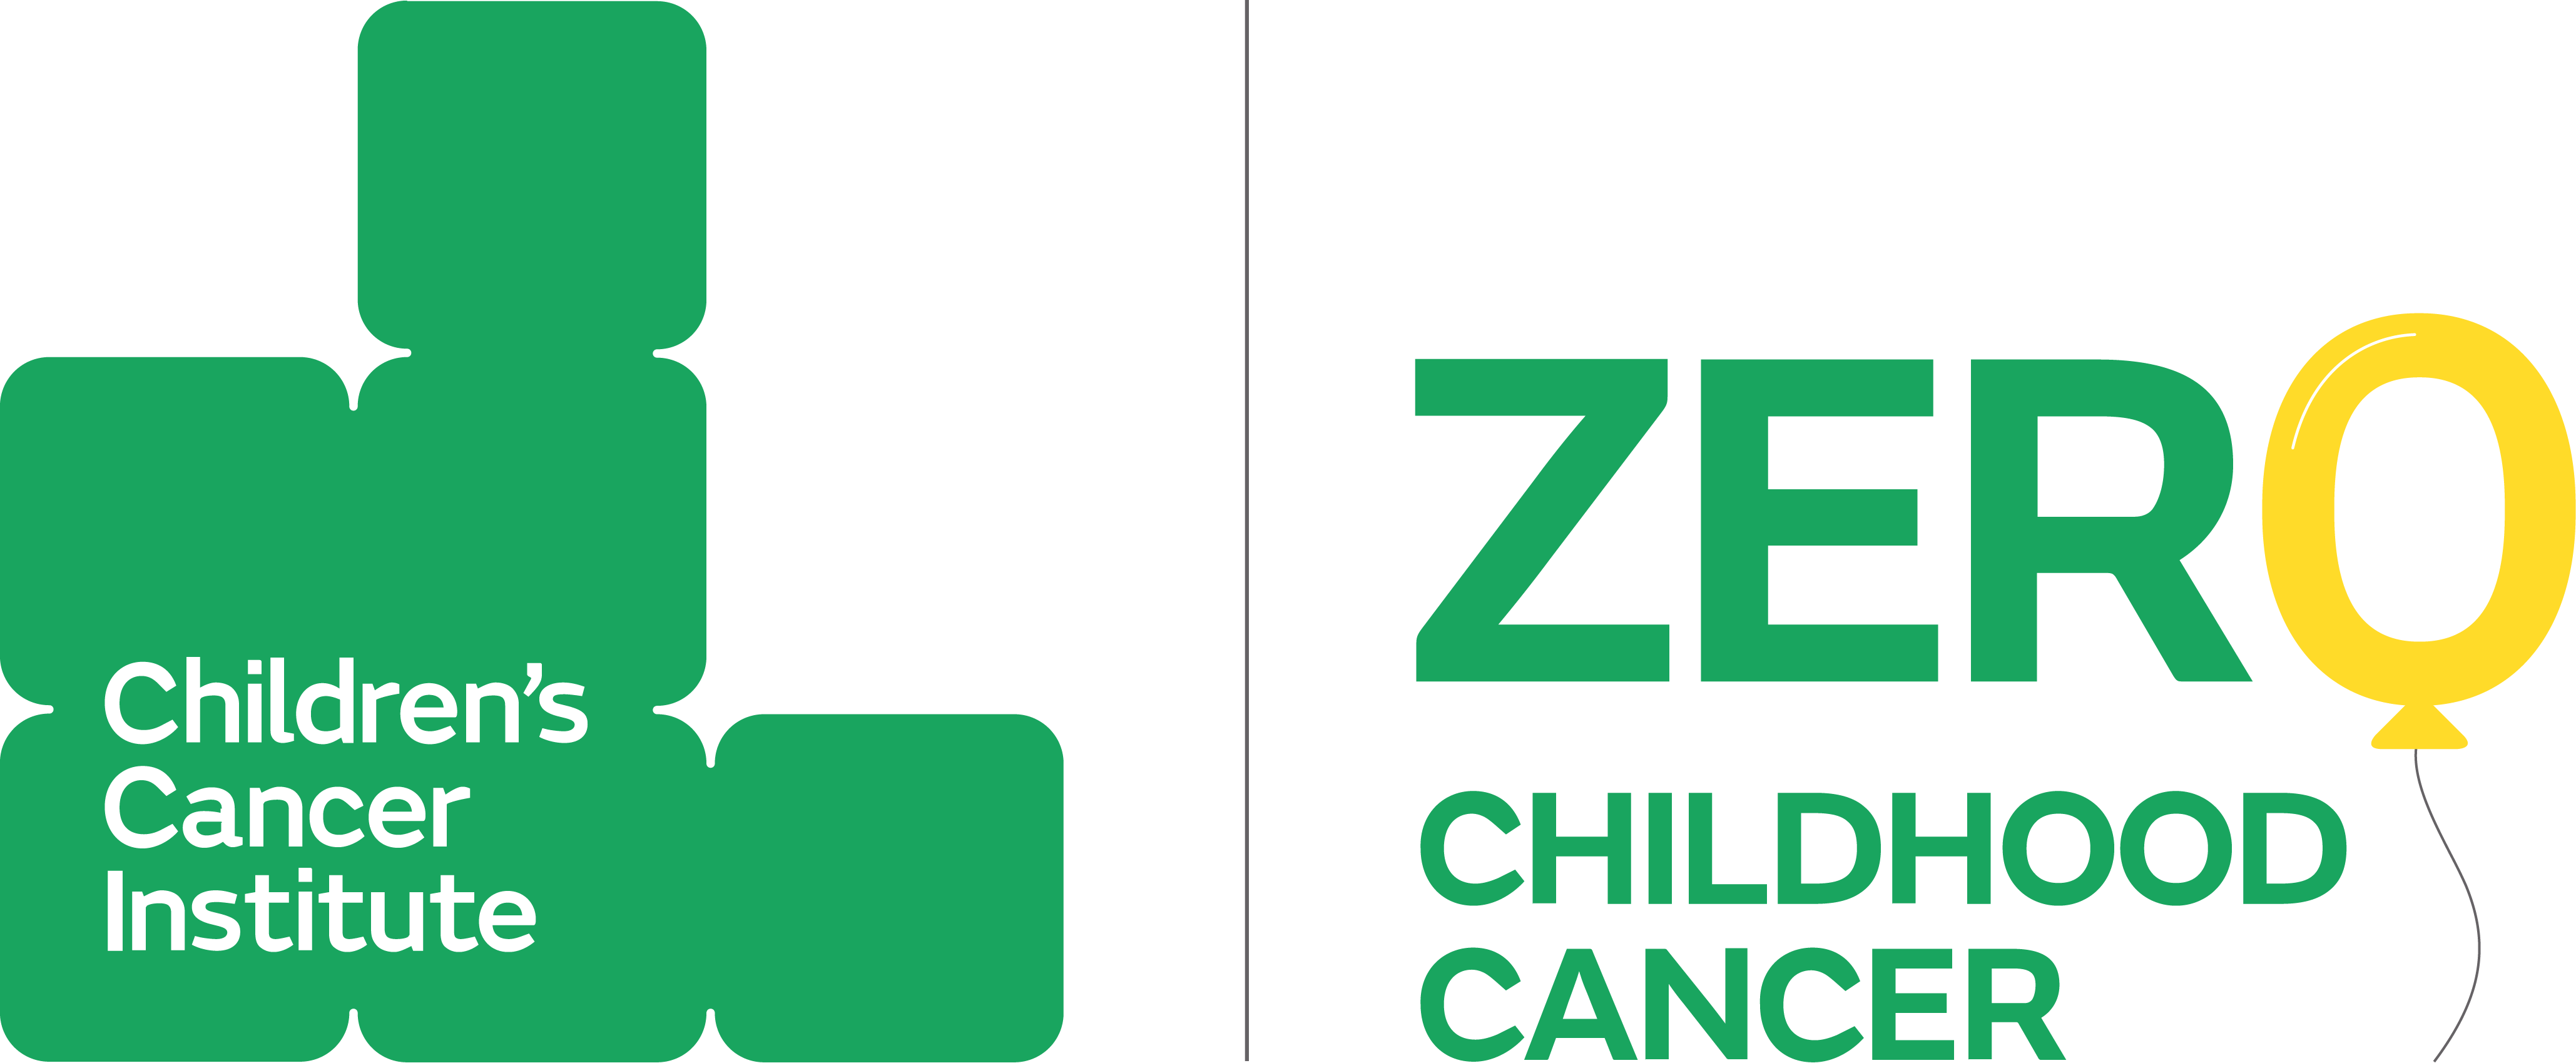 ZERO Cancer Update